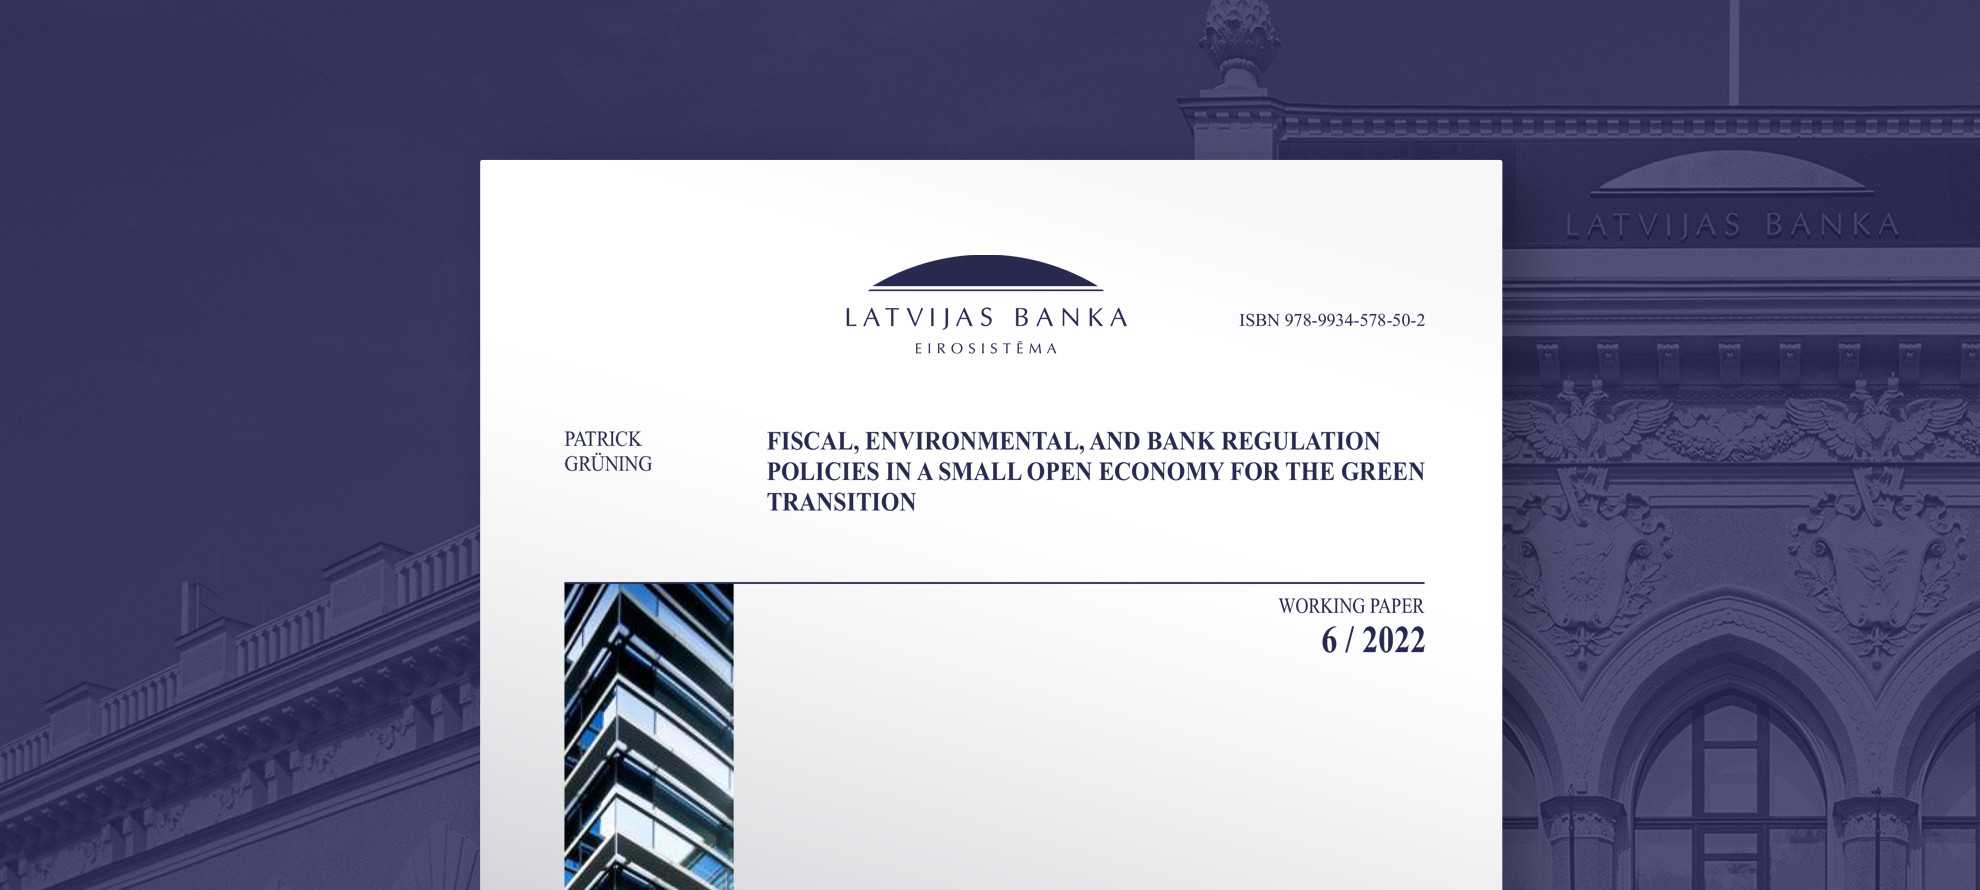 Fiskālā, vides un banku regulējuma politika, nodrošinot pāreju uz zaļo ekonomiku mazā un atvērtā tautsaimniecībā